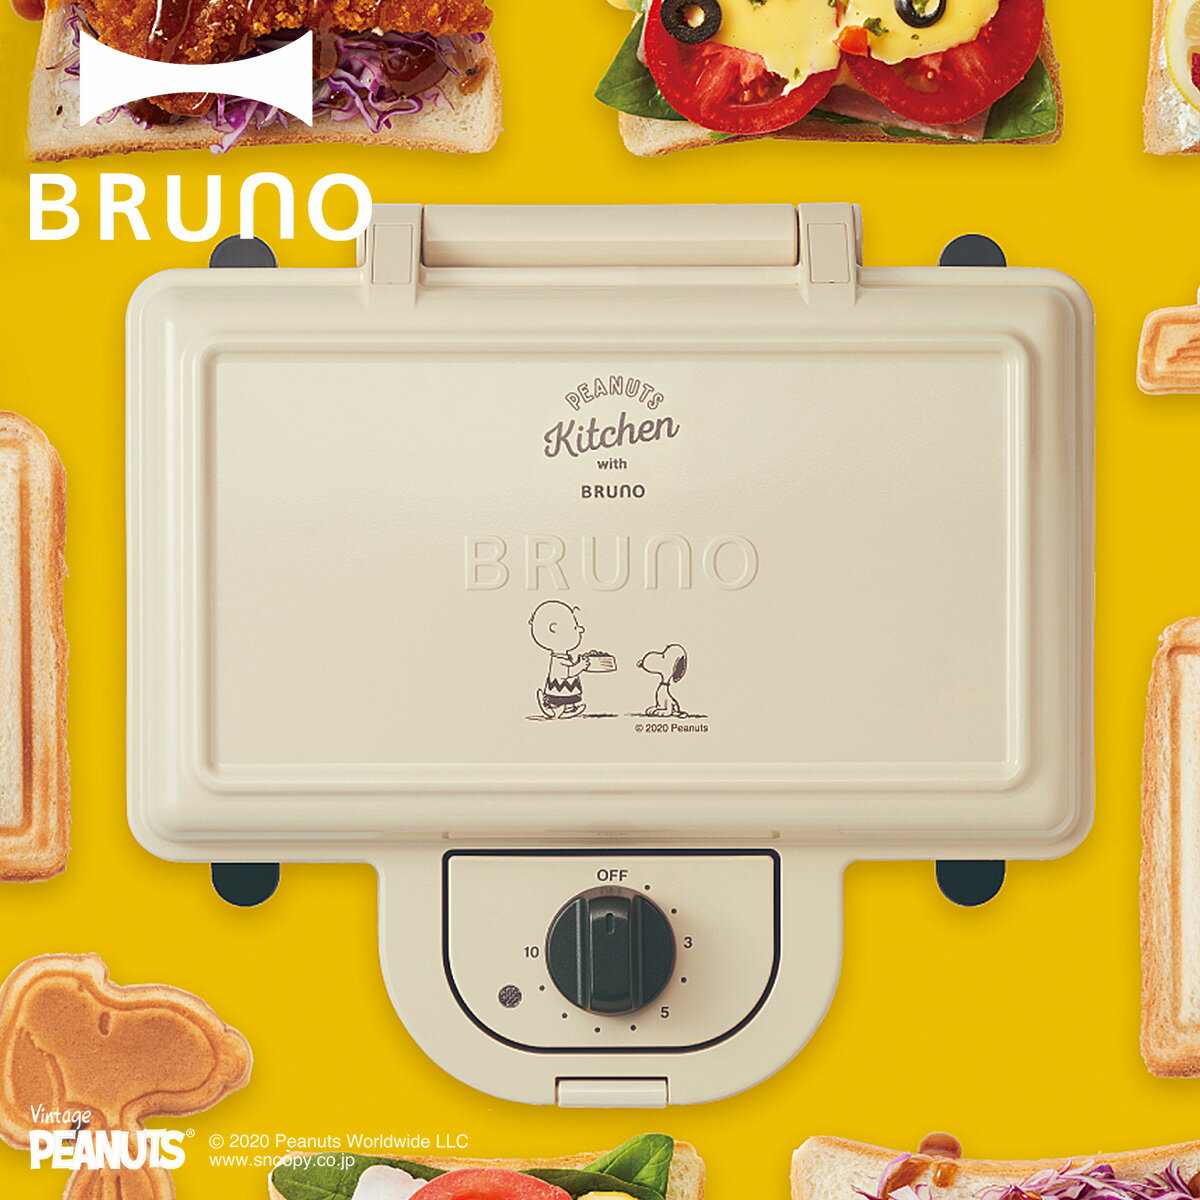 BRUNO ブルーノ ホットサンドメーカー ダブル スヌーピー パンの耳まで焼ける コンパクト タイマー 朝食 プレート パン トースト 家電 ホワイト エクリュ 白 BOE069